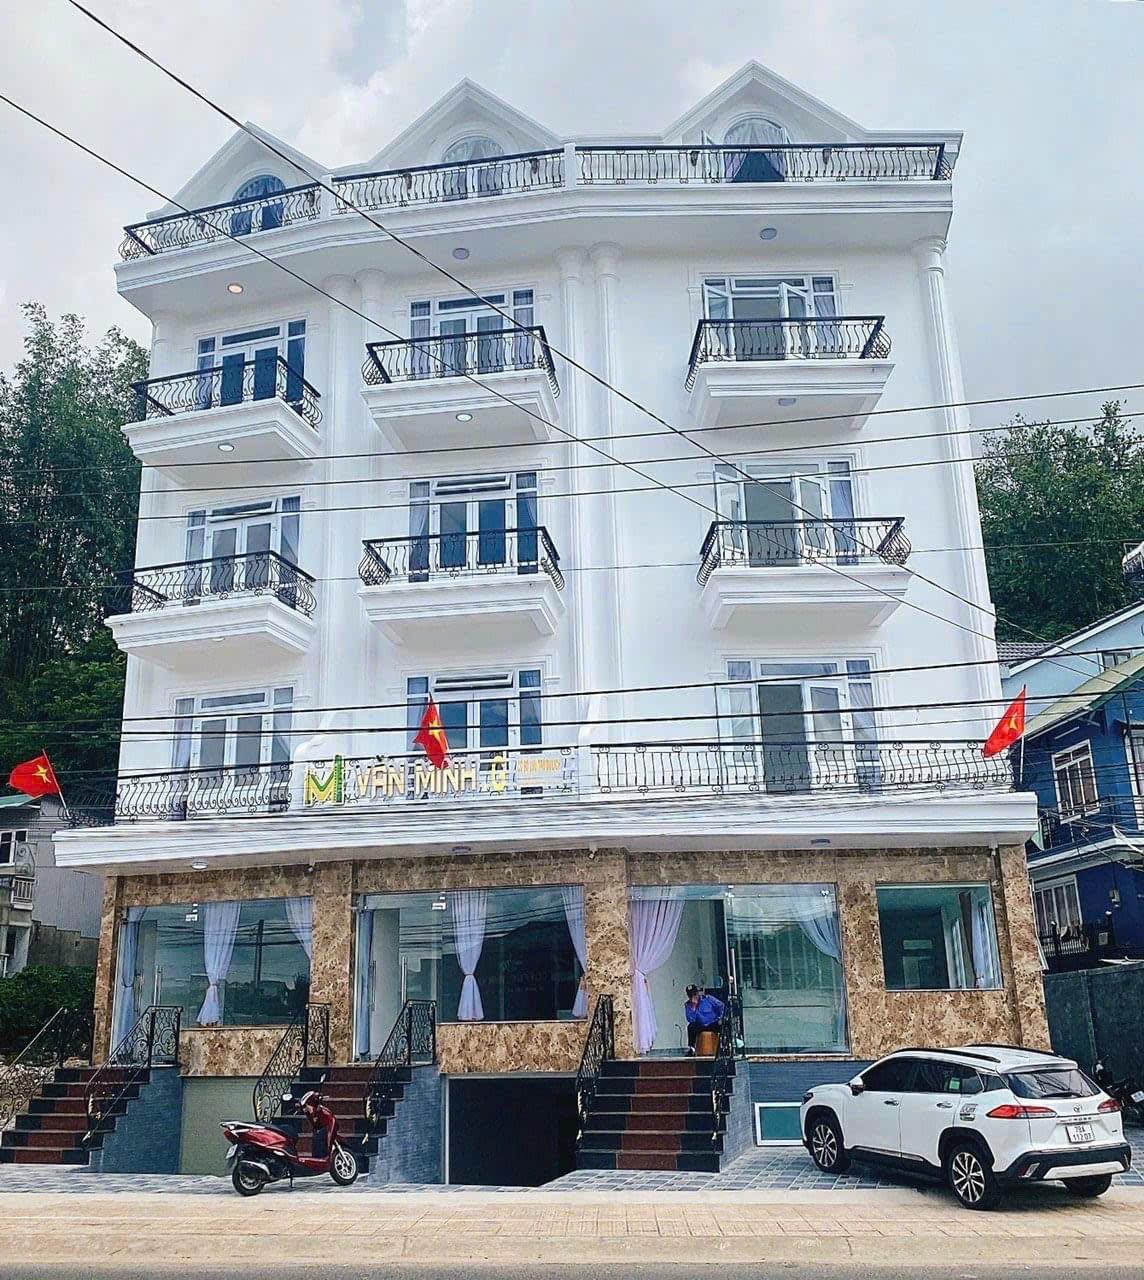 Bán 3 căn khách sạn mặt tiền đường Nguyễn Công Trứ Đà Lạt